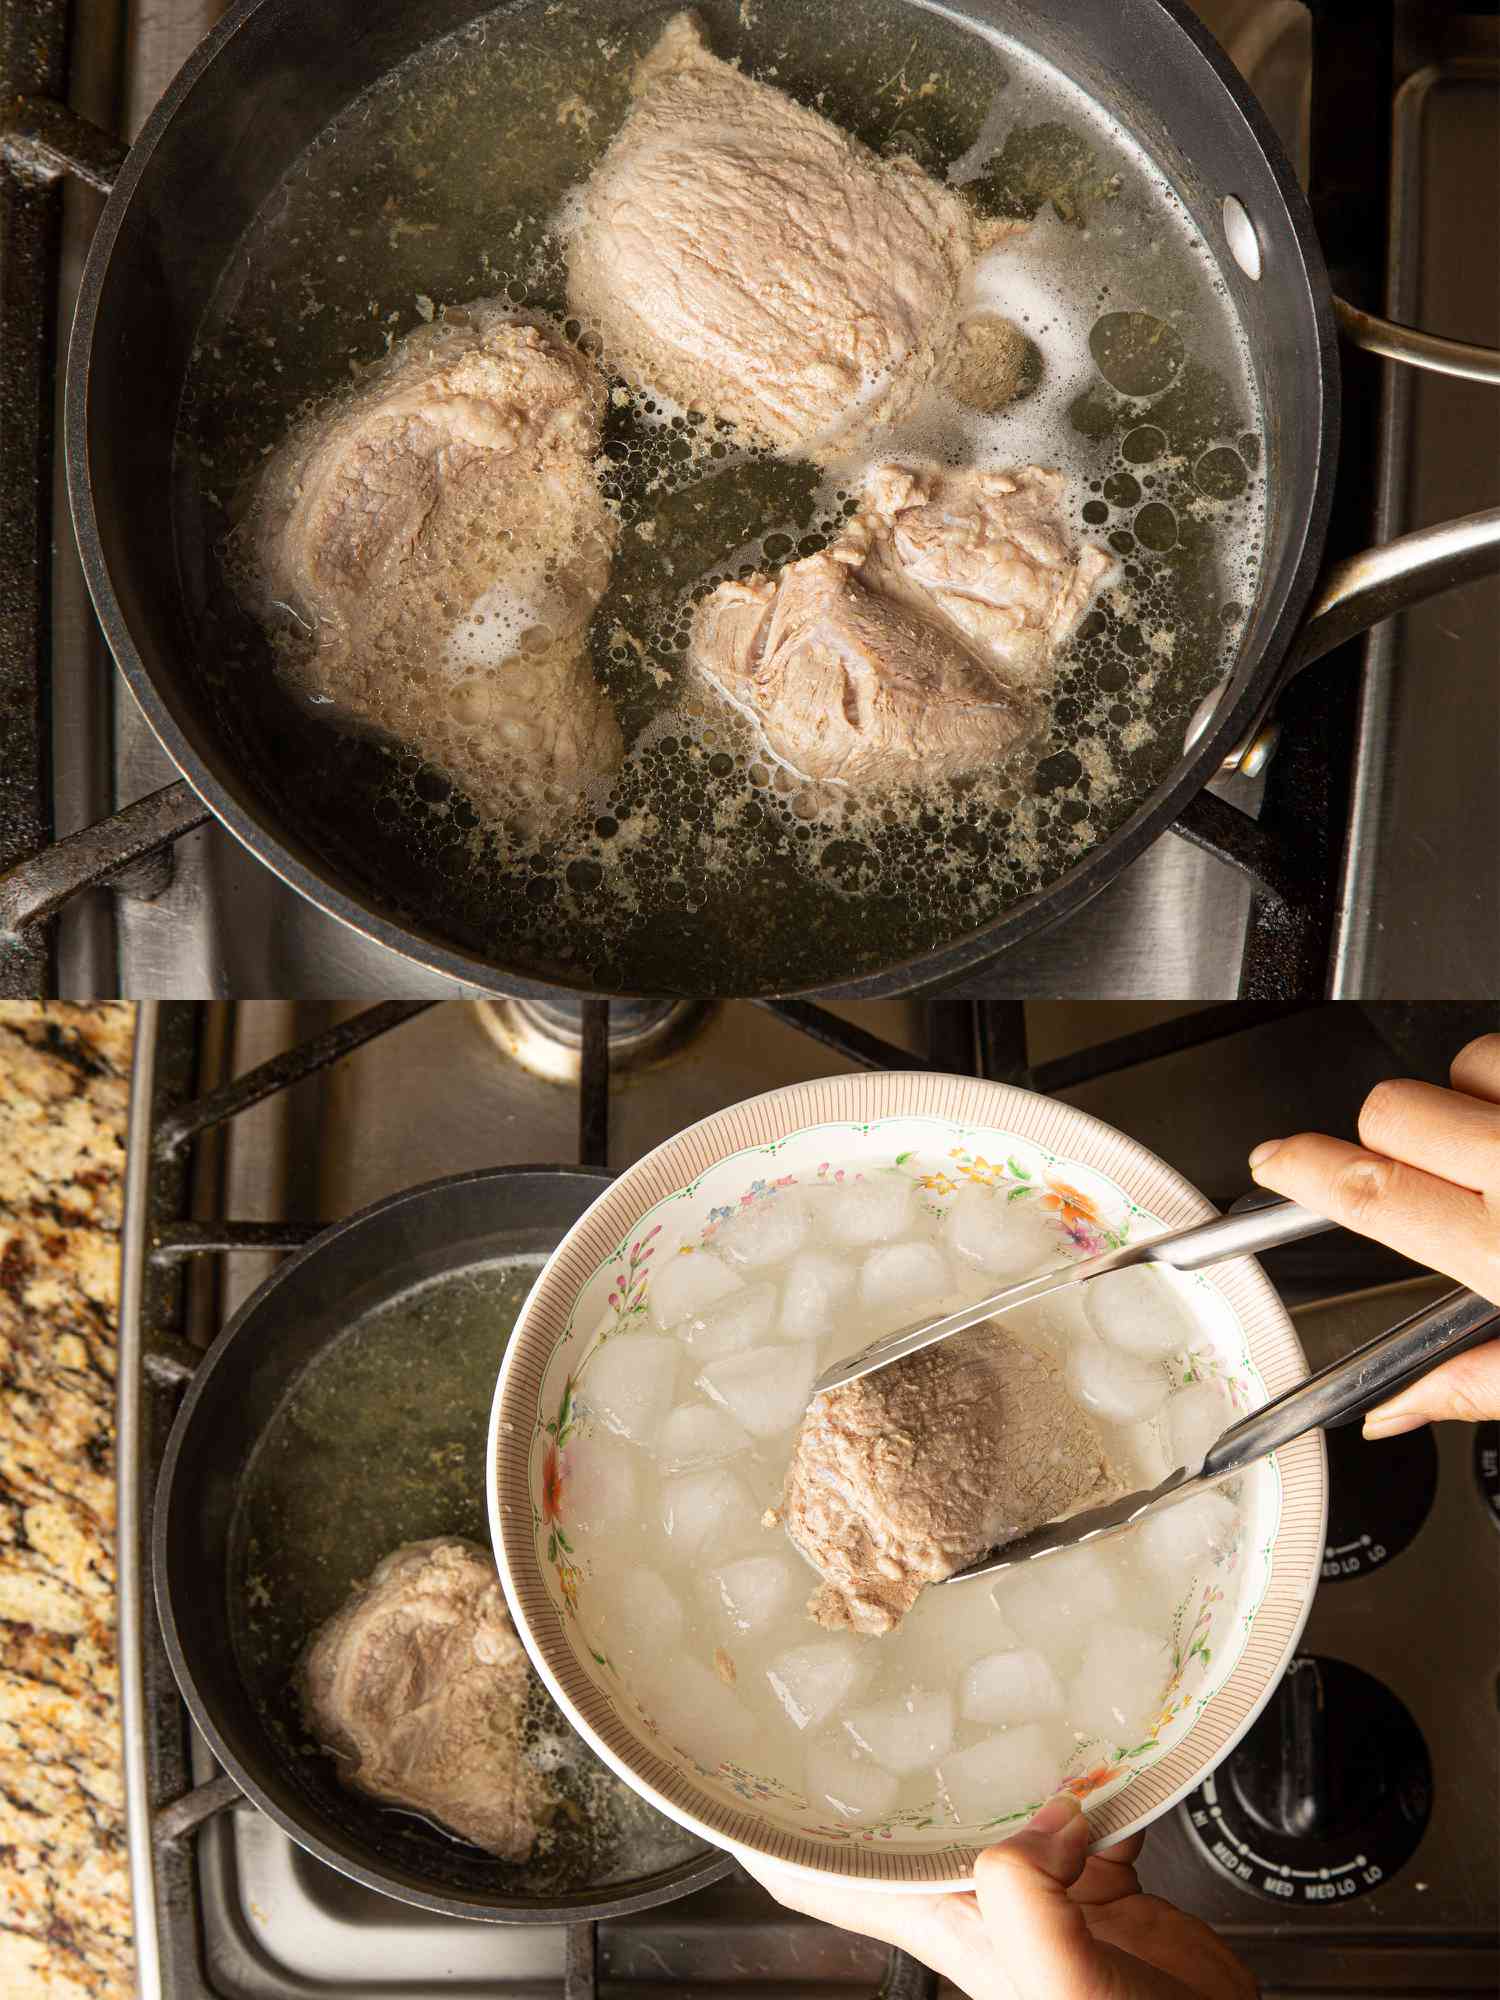 两个图像拼贴猪肉的屁股在锅做饭,然后被浸在冰浴gydF4y2Ba